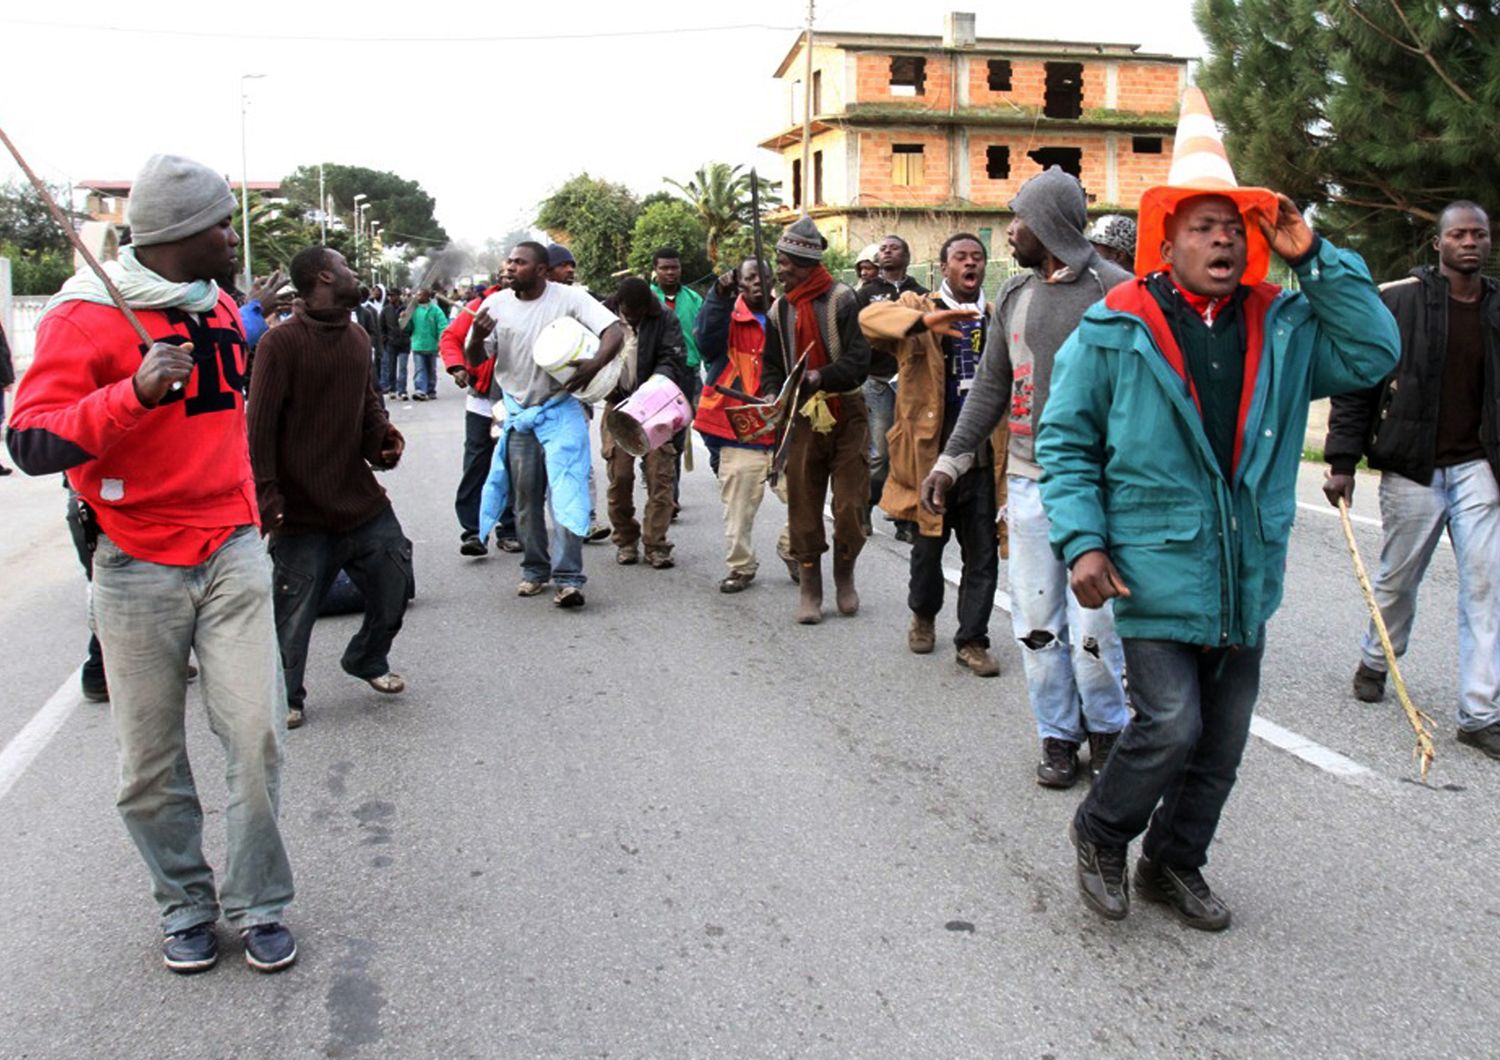 Protesta dei migranti a Rosarno nel gennaio 2010 (Afp)&nbsp;